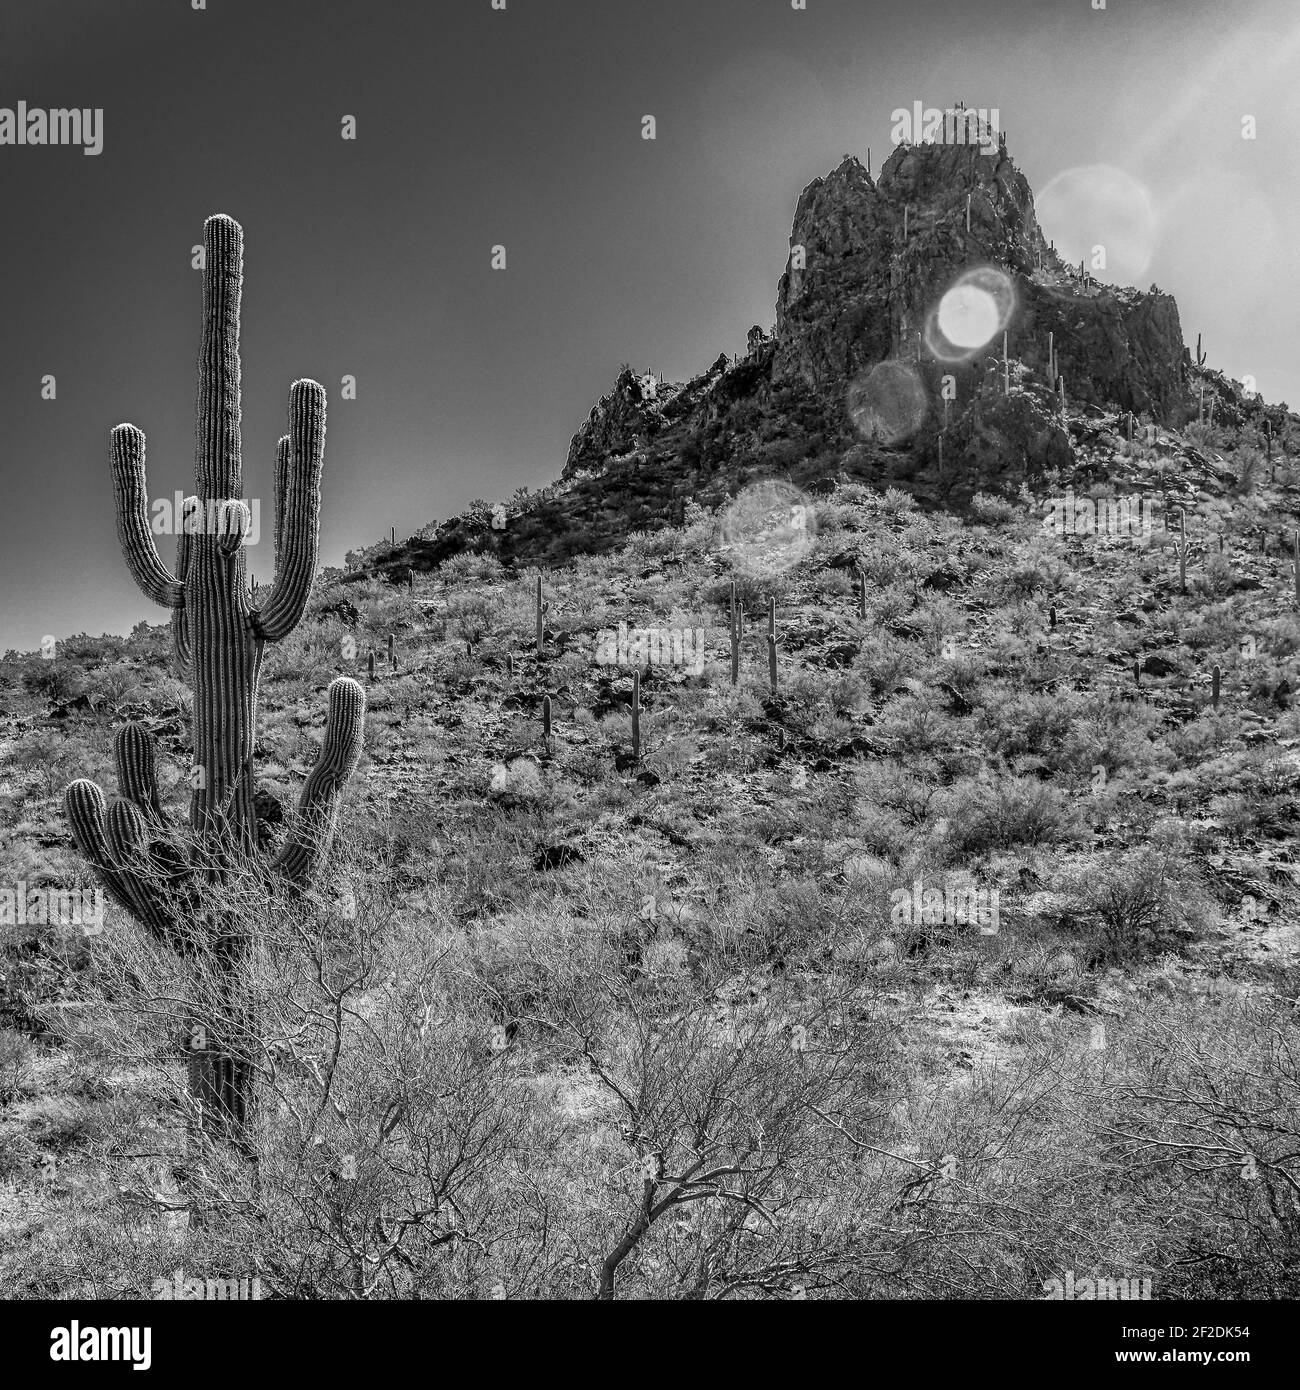 Les fusées éclairantes se trouvent à travers le pic de Picacho dans le parc national de Picacho Peak, entouré de cactus de Saguaro dans le désert de Sonora à Picacho, Arizona, États-Unis, en noir et blanc Banque D'Images